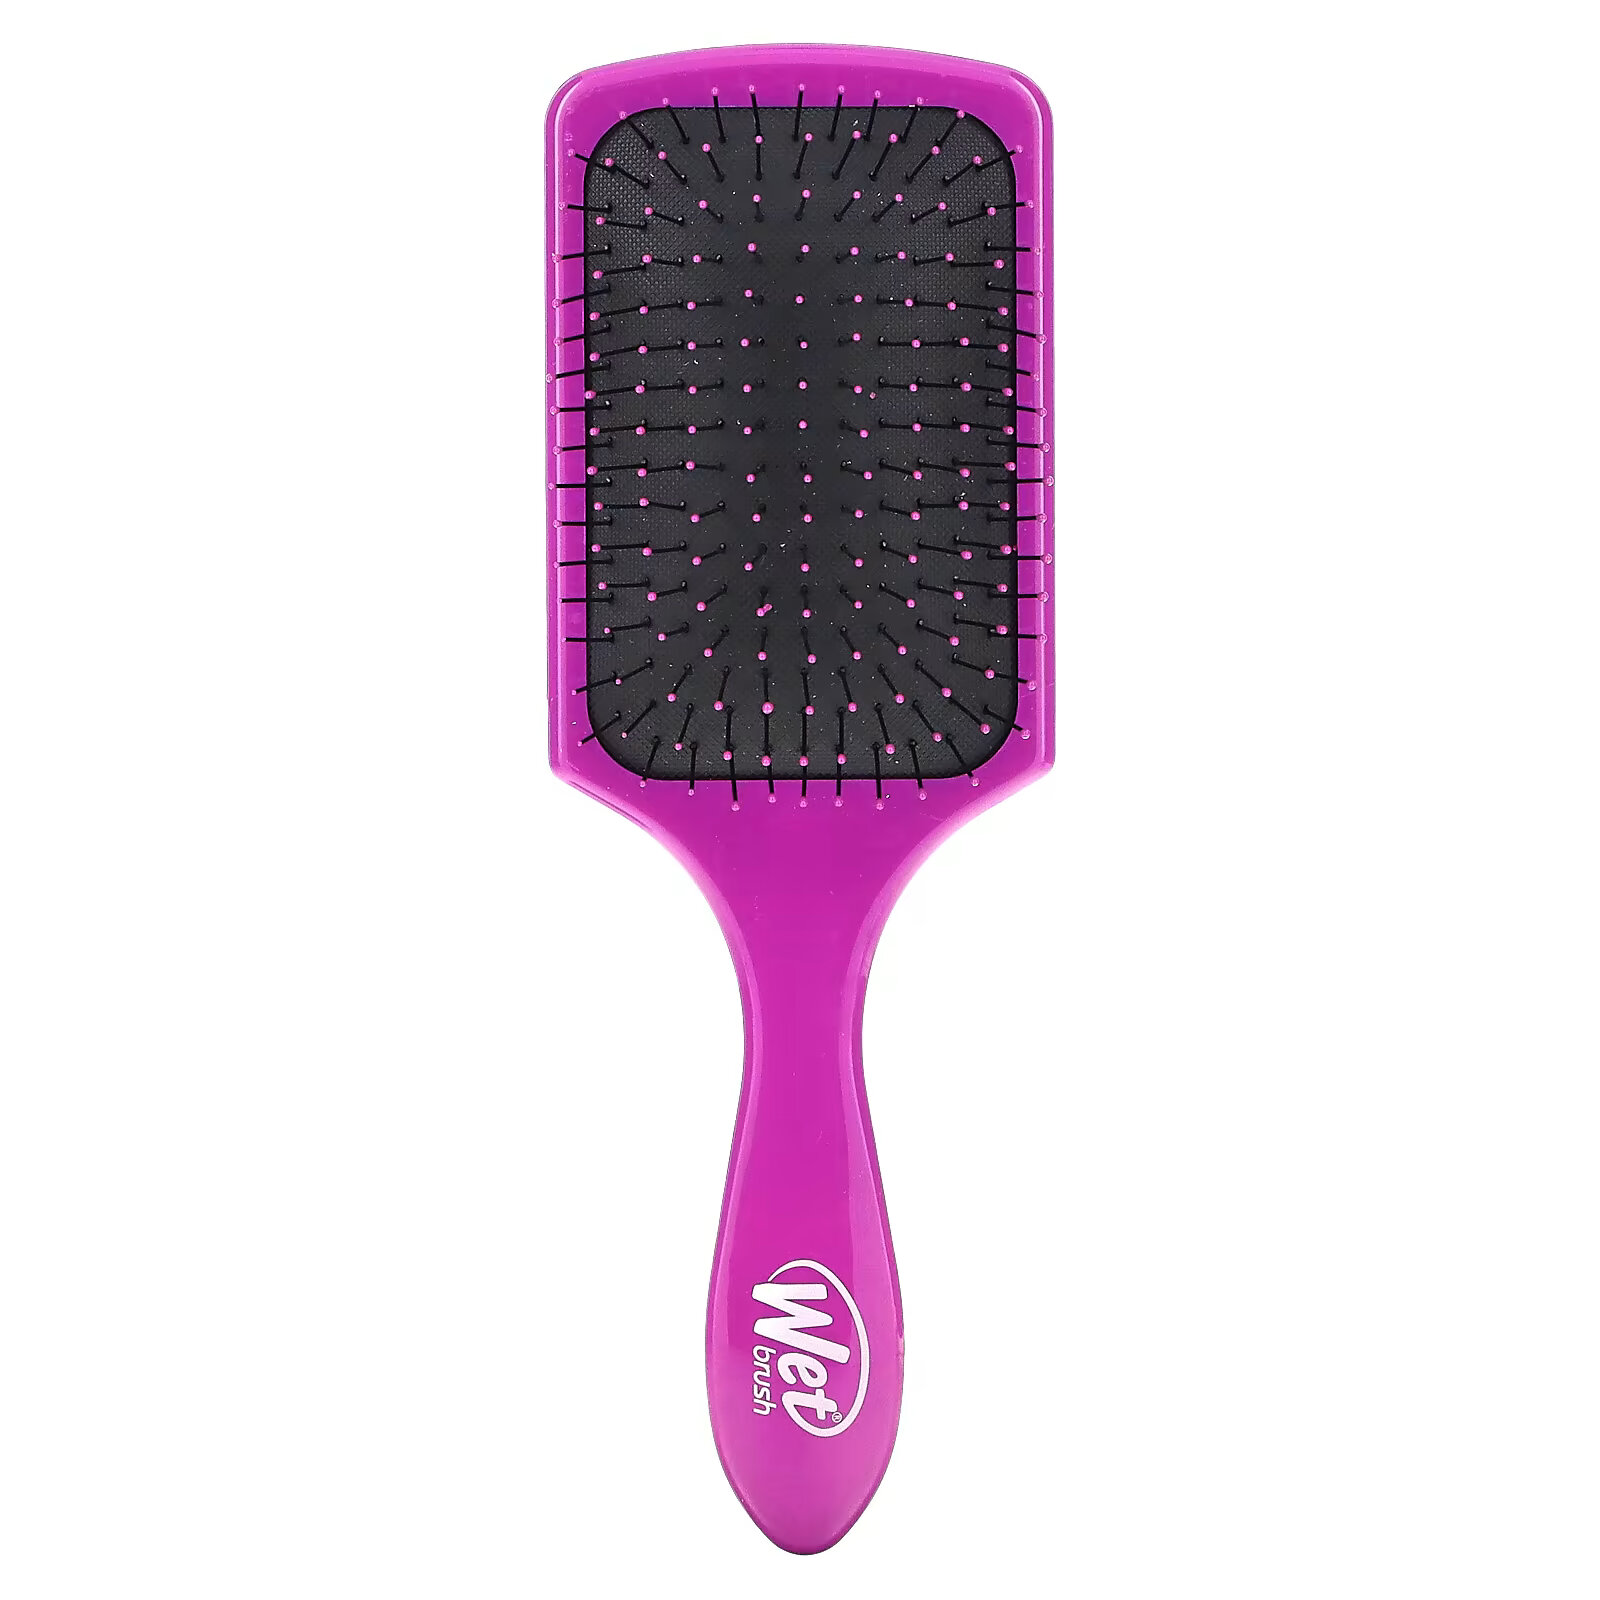 Wet Brush, Paddle Detangler Brush, щетка для легкого расчесывания, пурпурный, 1 шт. wet brush paddle detangler brush щетка для легкого расчесывания пурпурный 1 шт